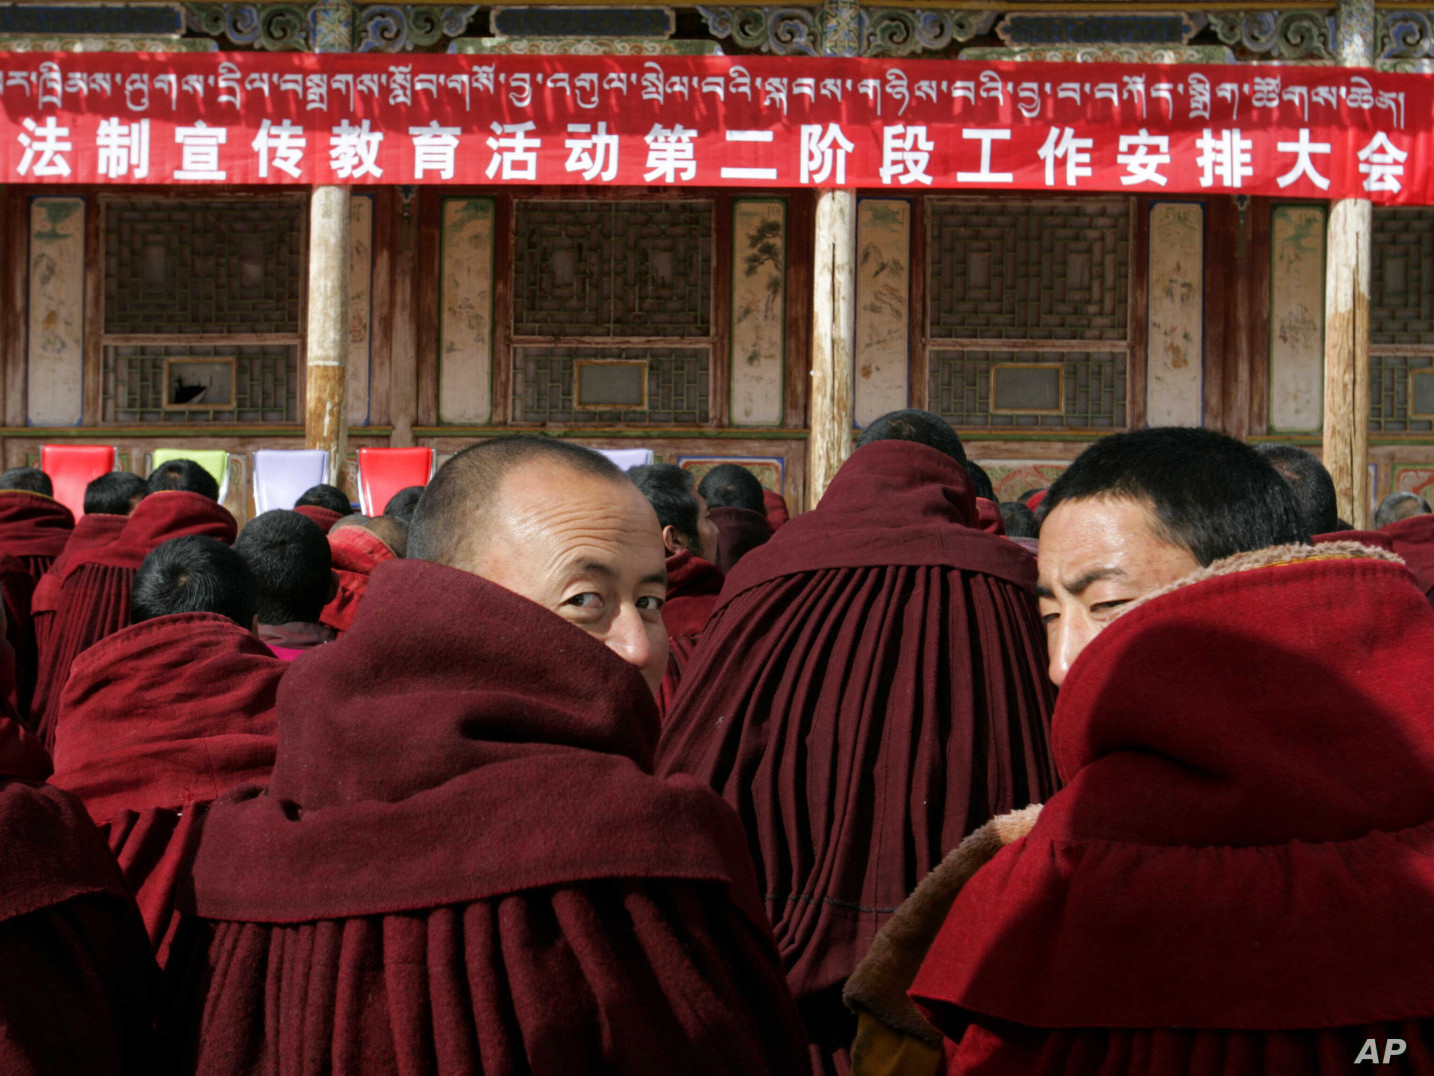 АНУ-аас Төвдөд хүний эрхийн элчийг томилсныг буруутгаж “улс төрийн явуулга” гэв